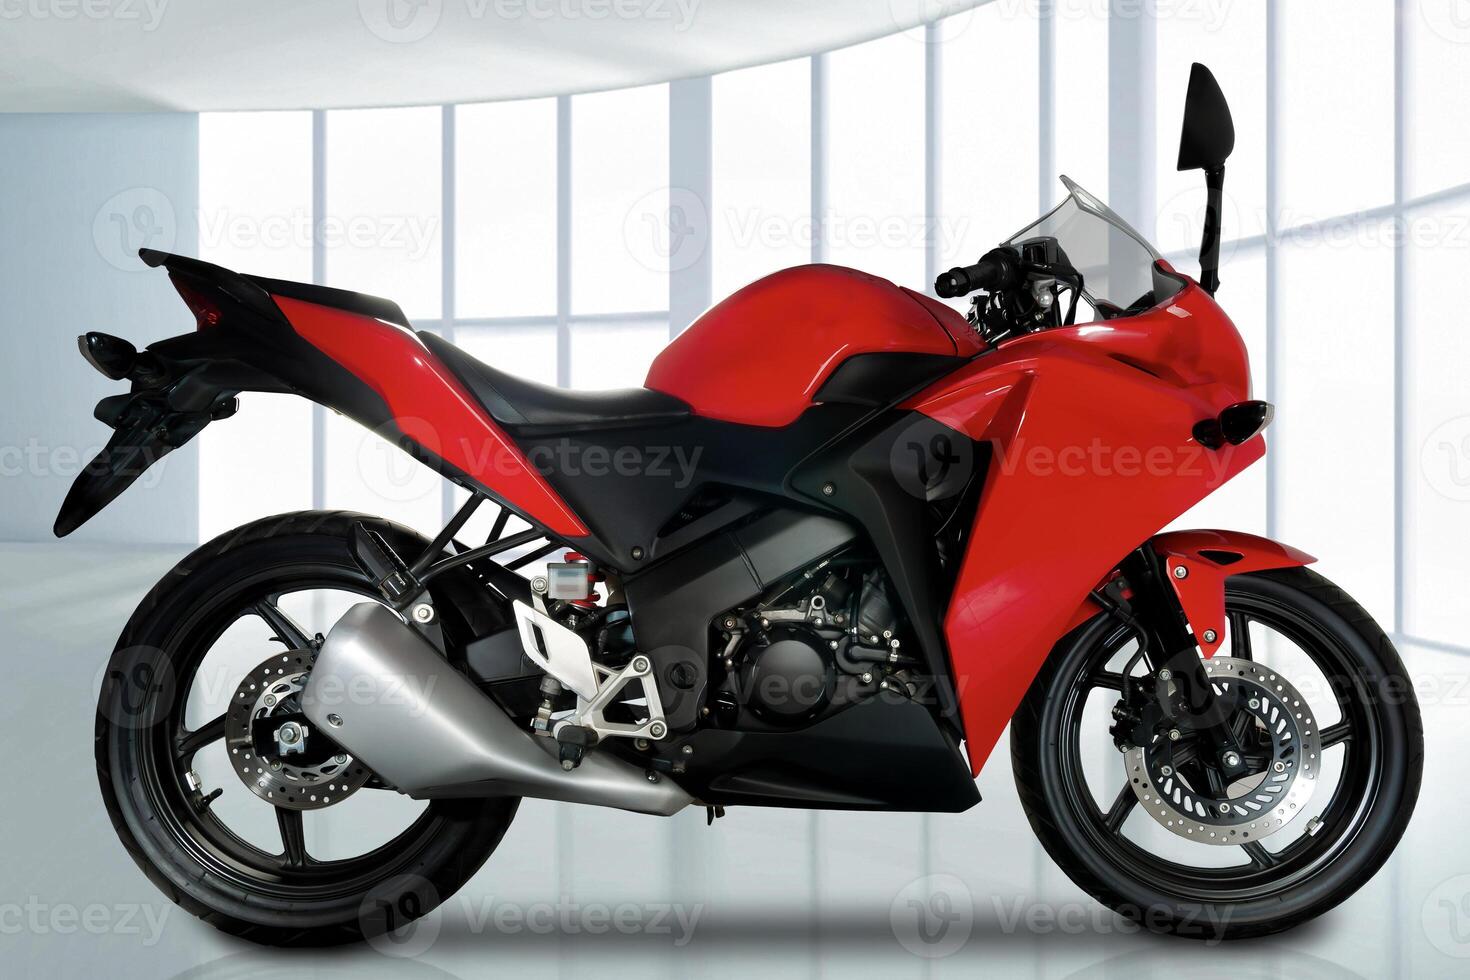 full sida se av röd sporter typ motorcykel med bränsle injektion systemet, 250 cc motor, foto